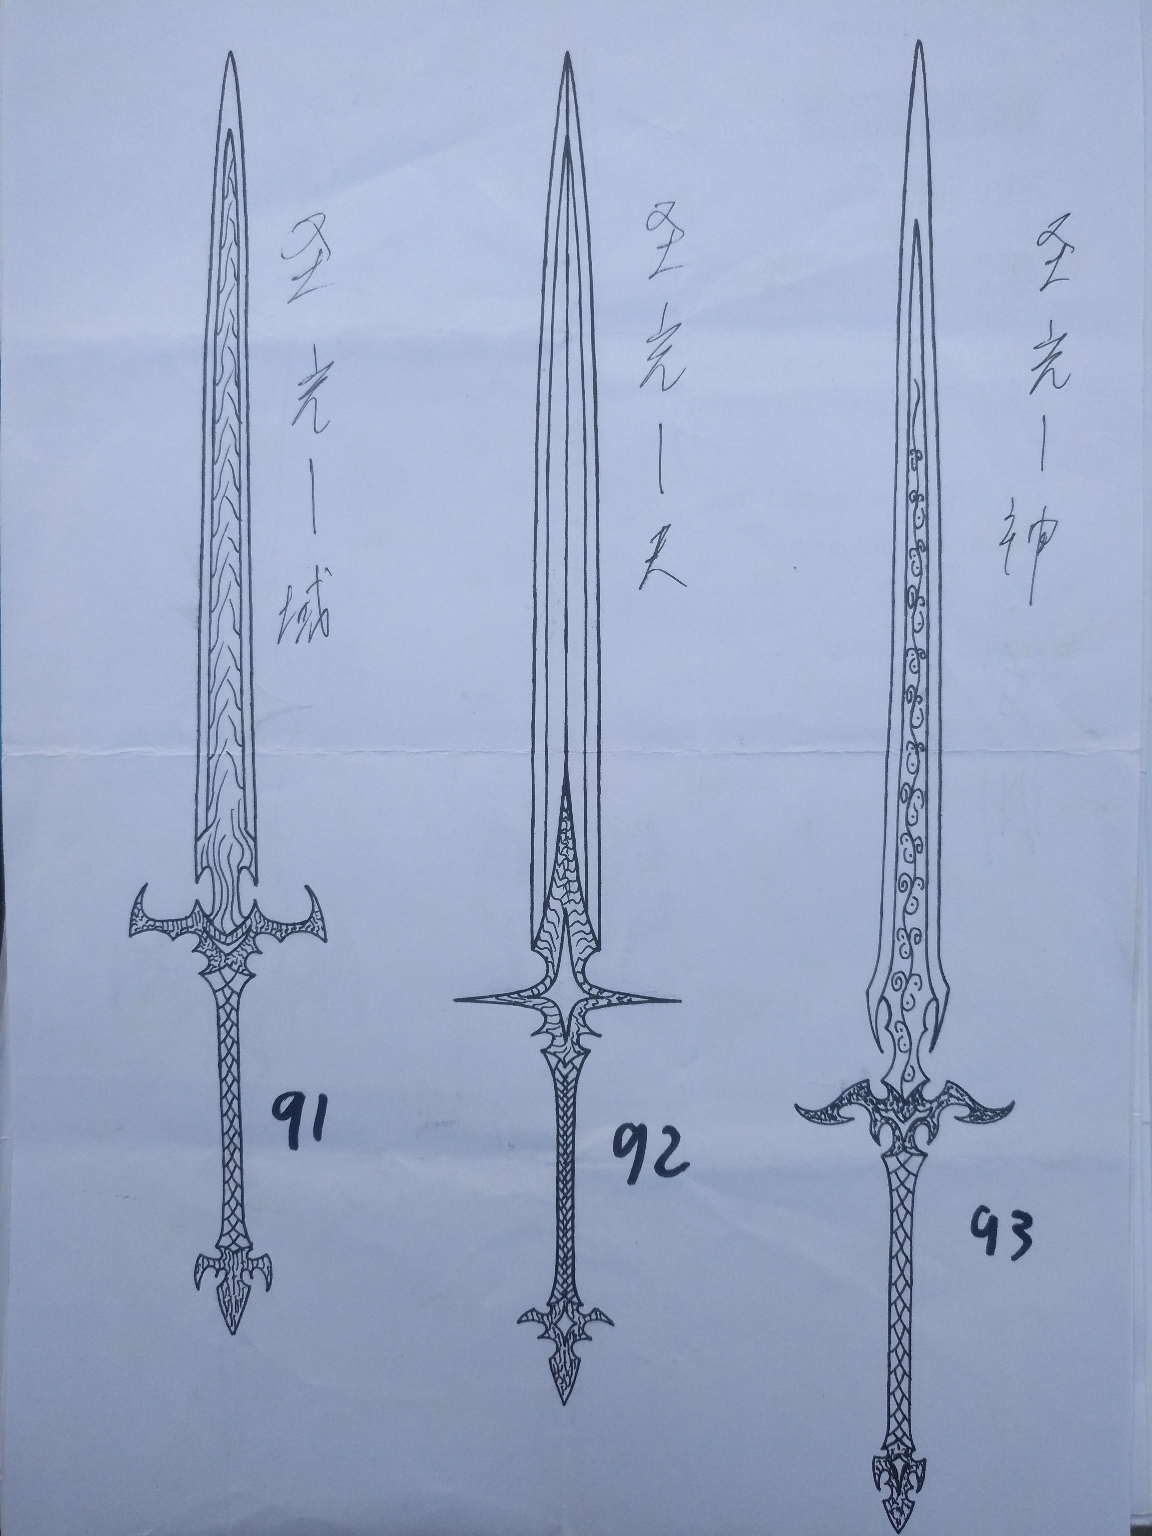 那天突然有个想法,想画系列武器,然后就有了这八把剑!